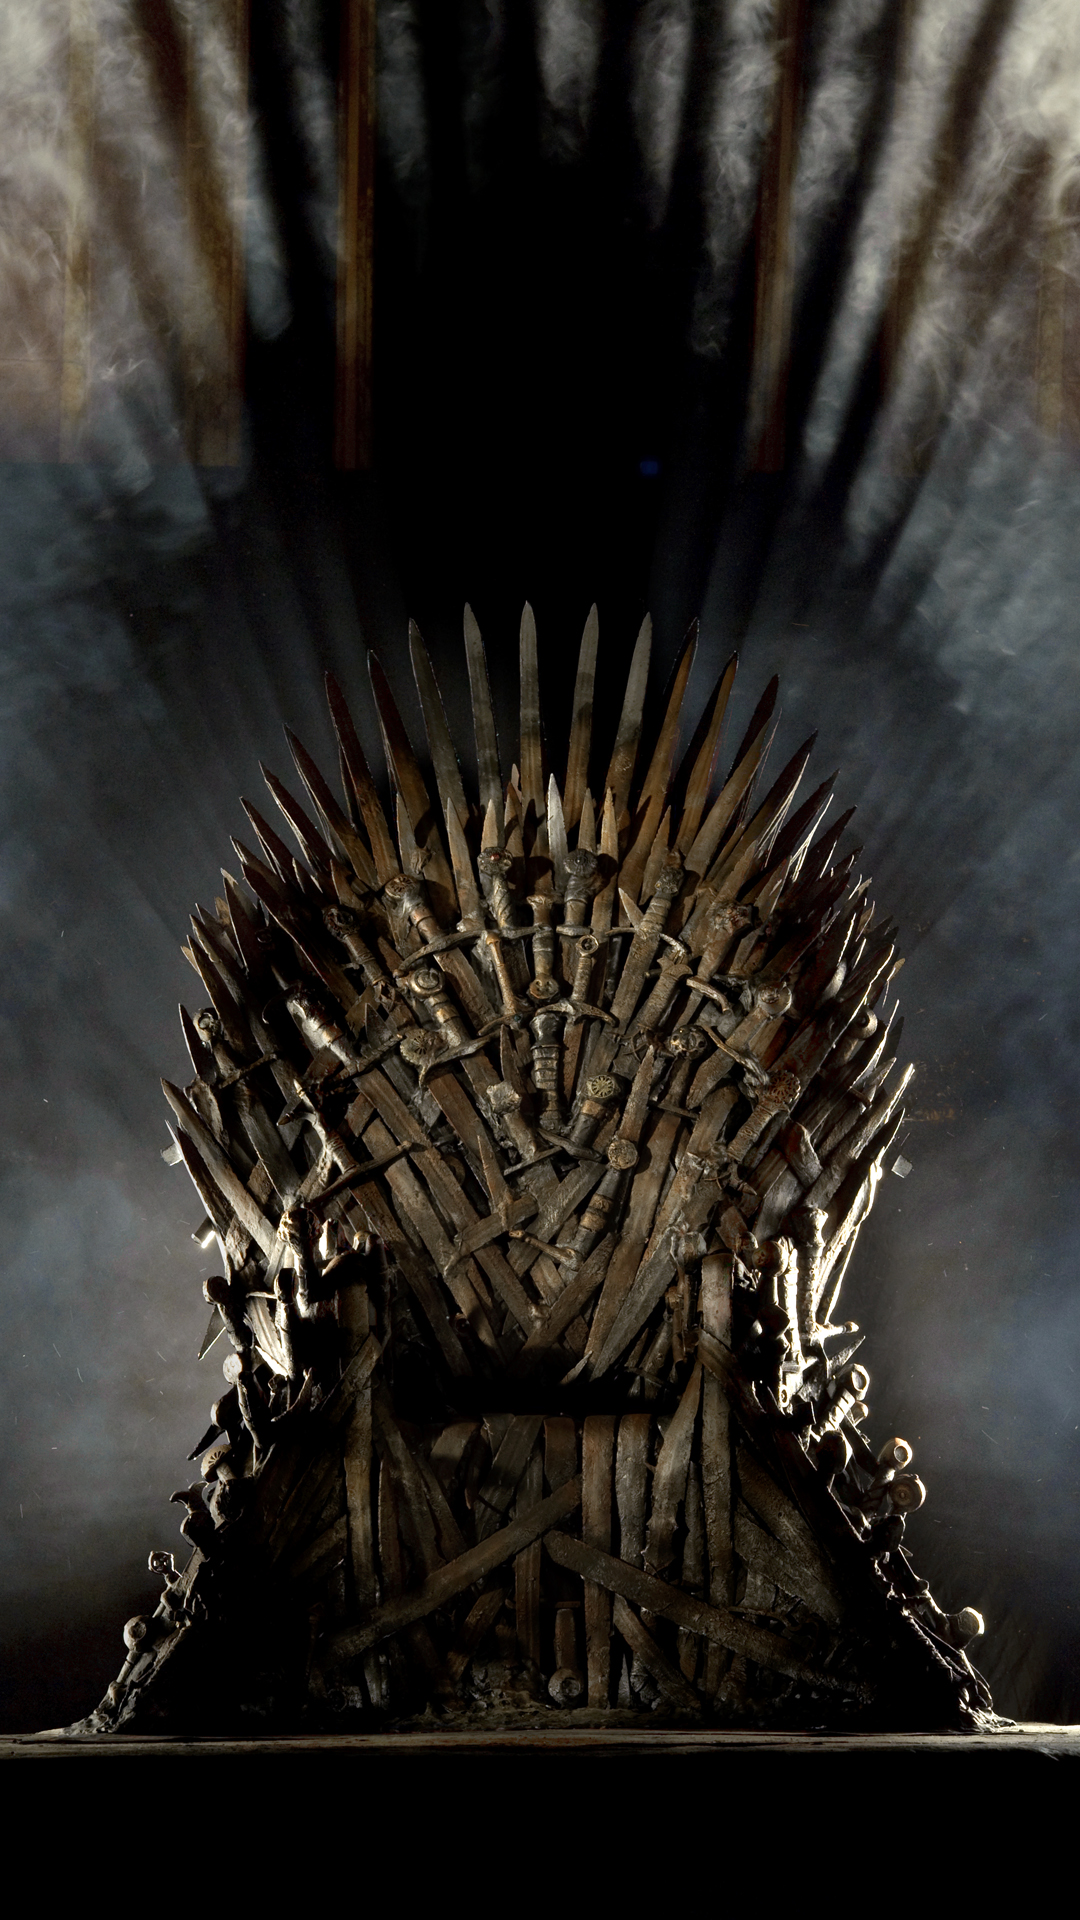 24+] Game Of Thrones Chair Wallpaper - WallpaperSafari